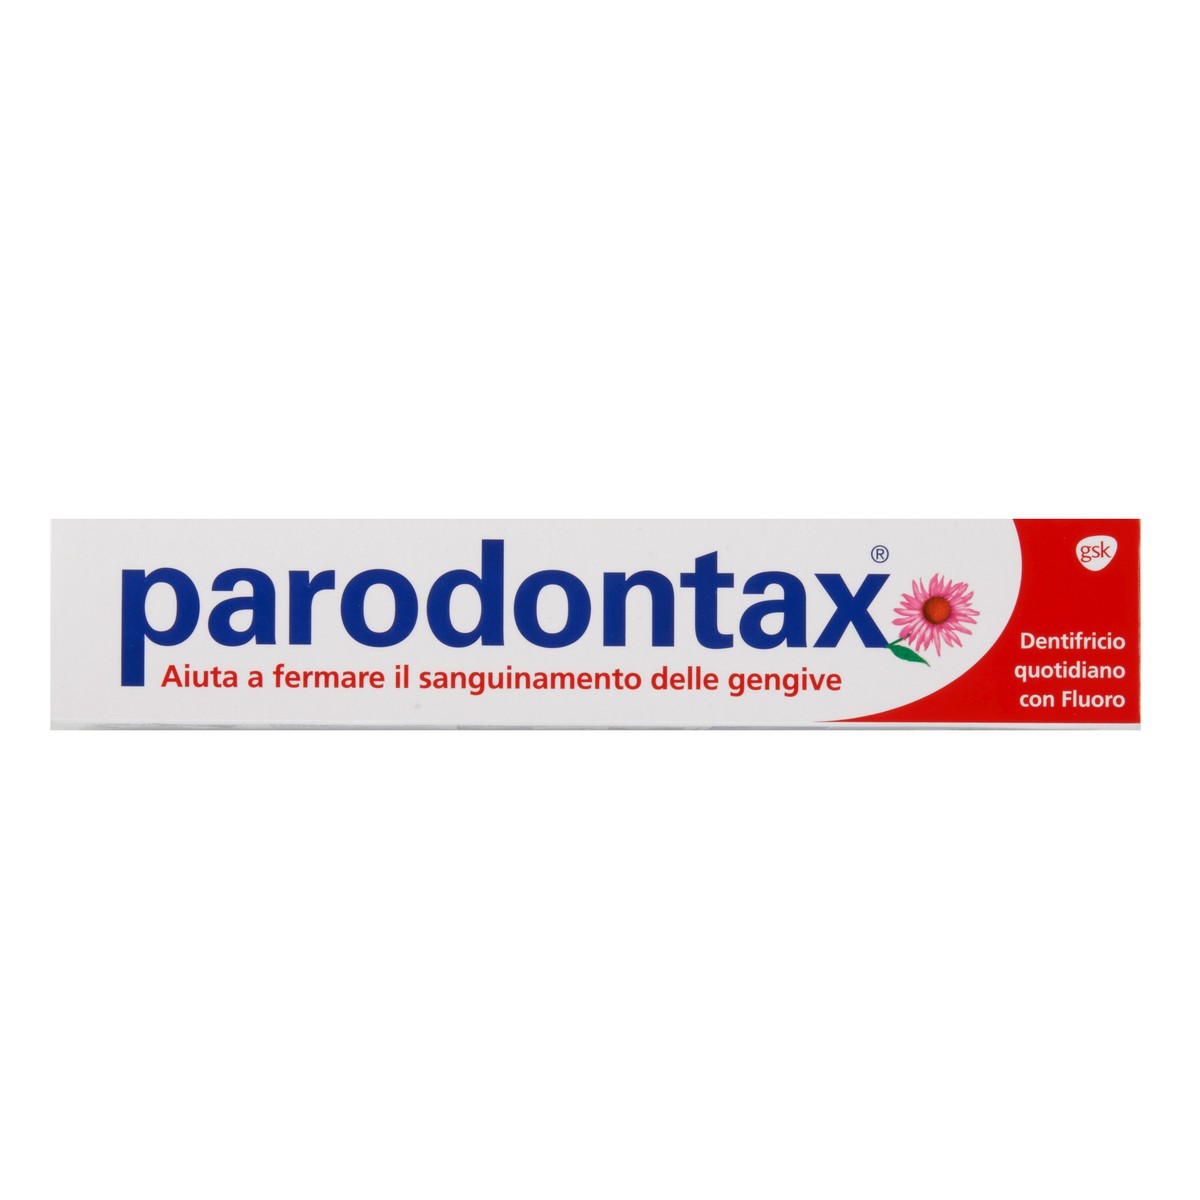 Parodontax Dentifricio quotidiano con fluoro